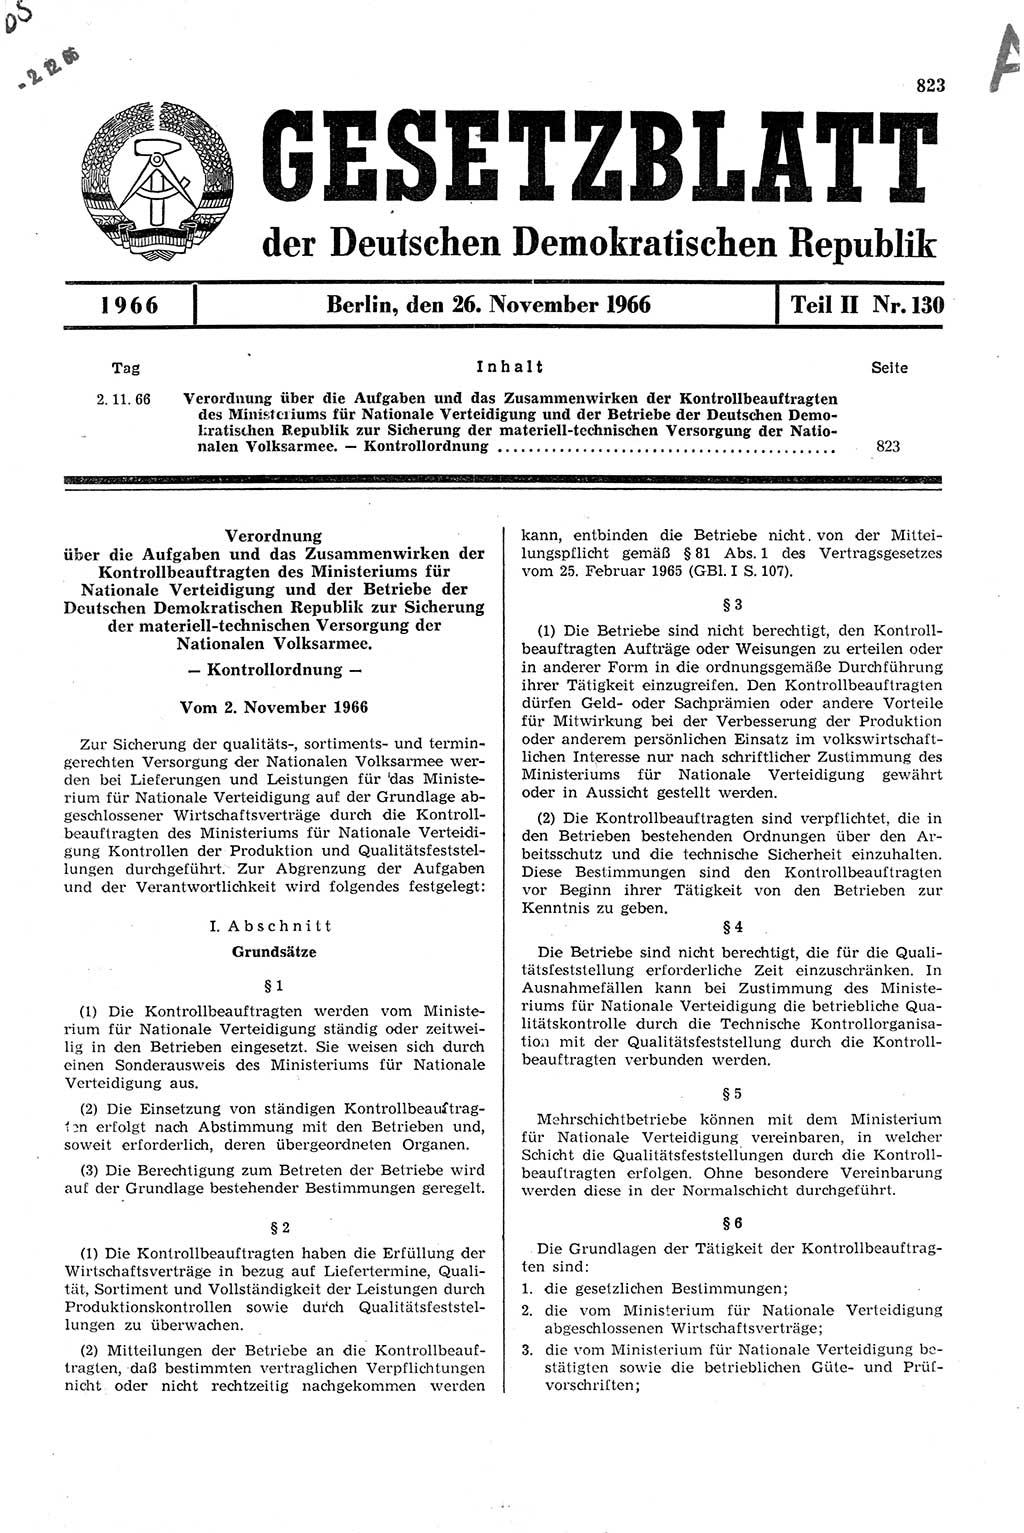 Gesetzblatt (GBl.) der Deutschen Demokratischen Republik (DDR) Teil ⅠⅠ 1966, Seite 823 (GBl. DDR ⅠⅠ 1966, S. 823)